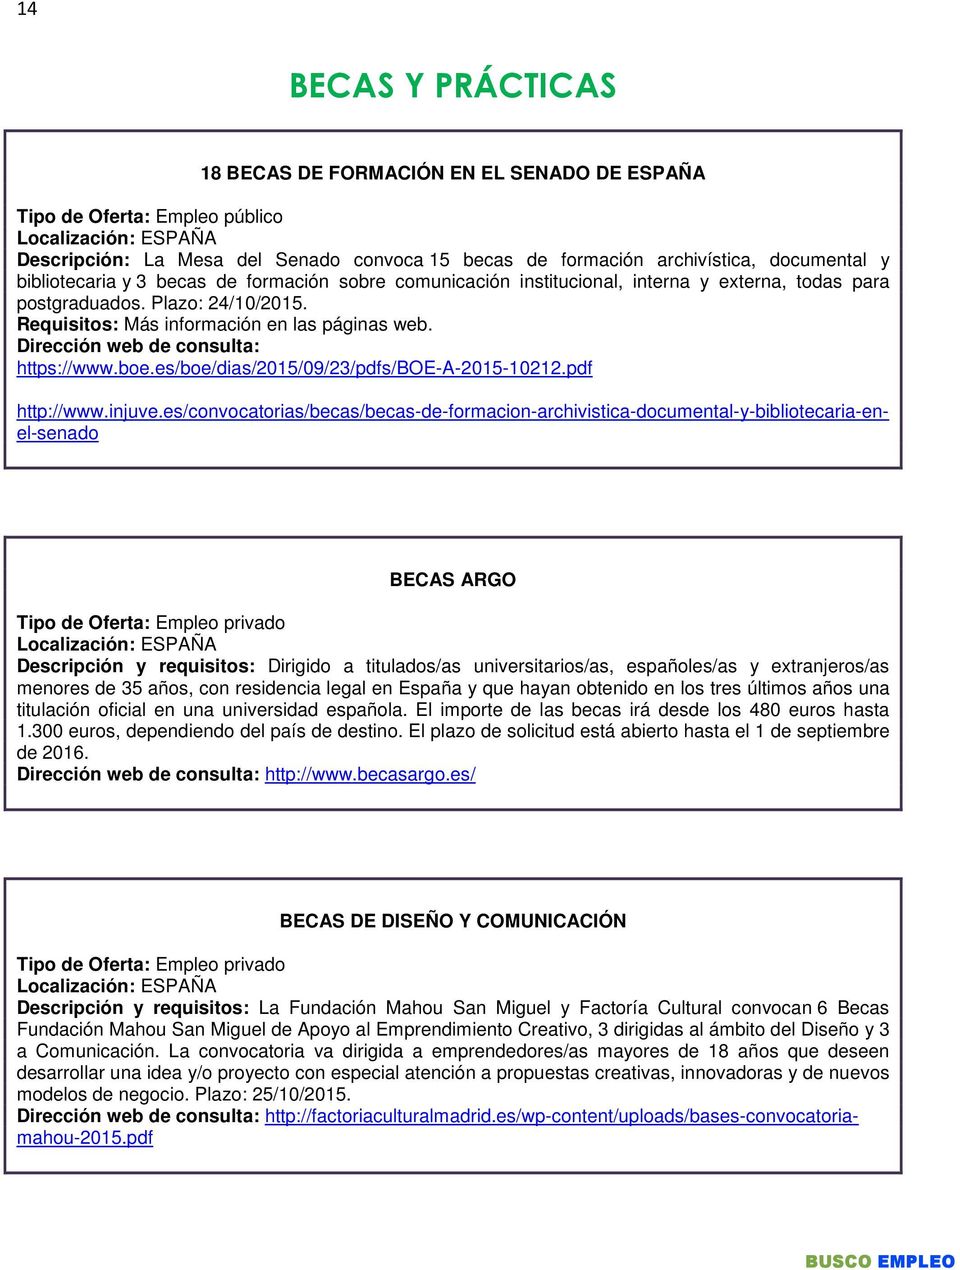 Dirección web de consulta: https://www.boe.es/boe/dias/2015/09/23/pdfs/boe-a-2015-10212.pdf http://www.injuve.